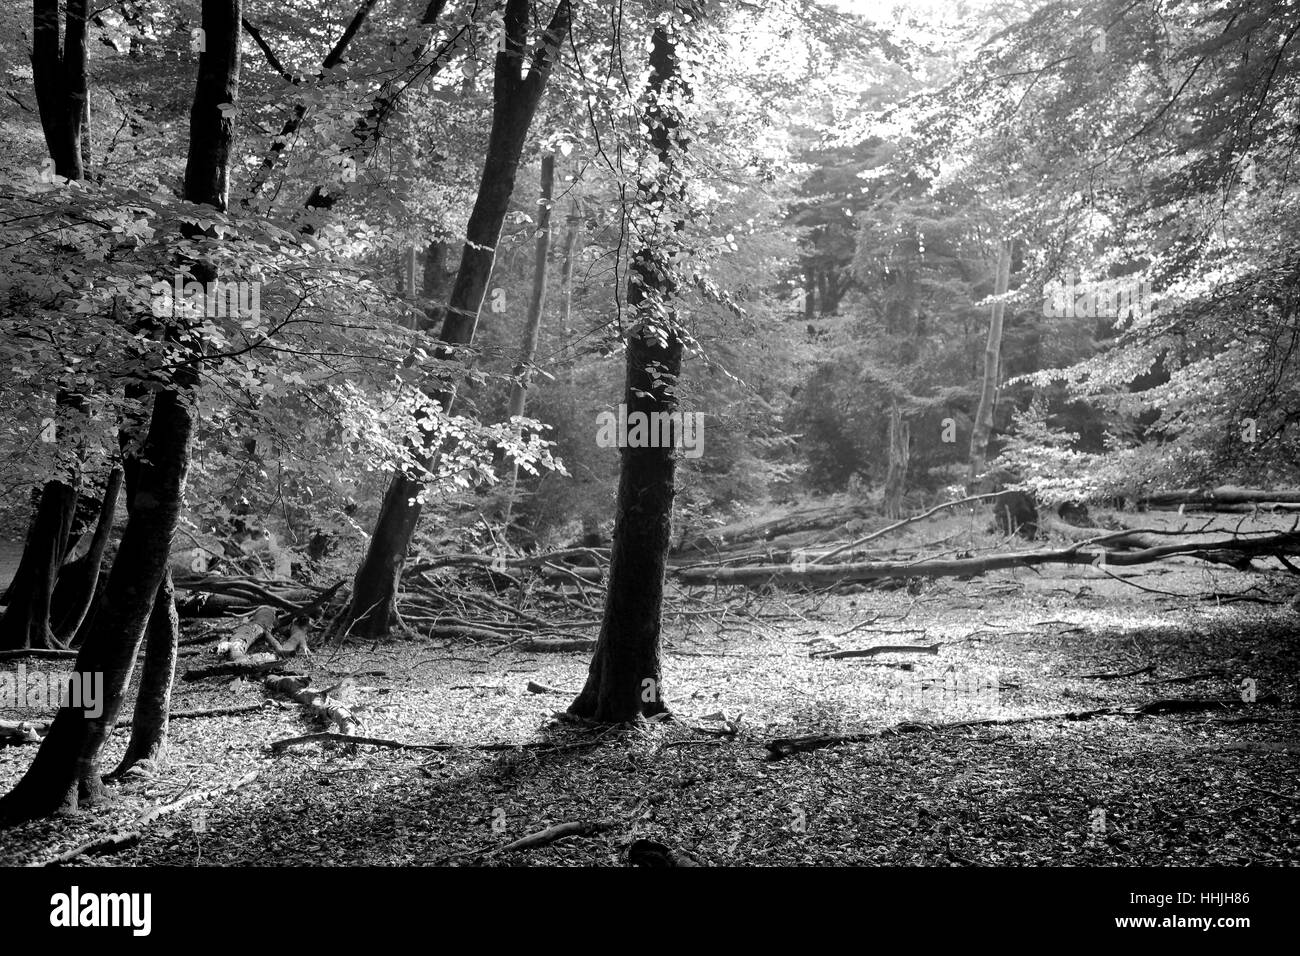 Les arbres forestiers et de fougères, Blanc Moor, Parc National de New Forest, Hampshire County ; Angleterre ; la Grande-Bretagne, Royaume-Uni Banque D'Images